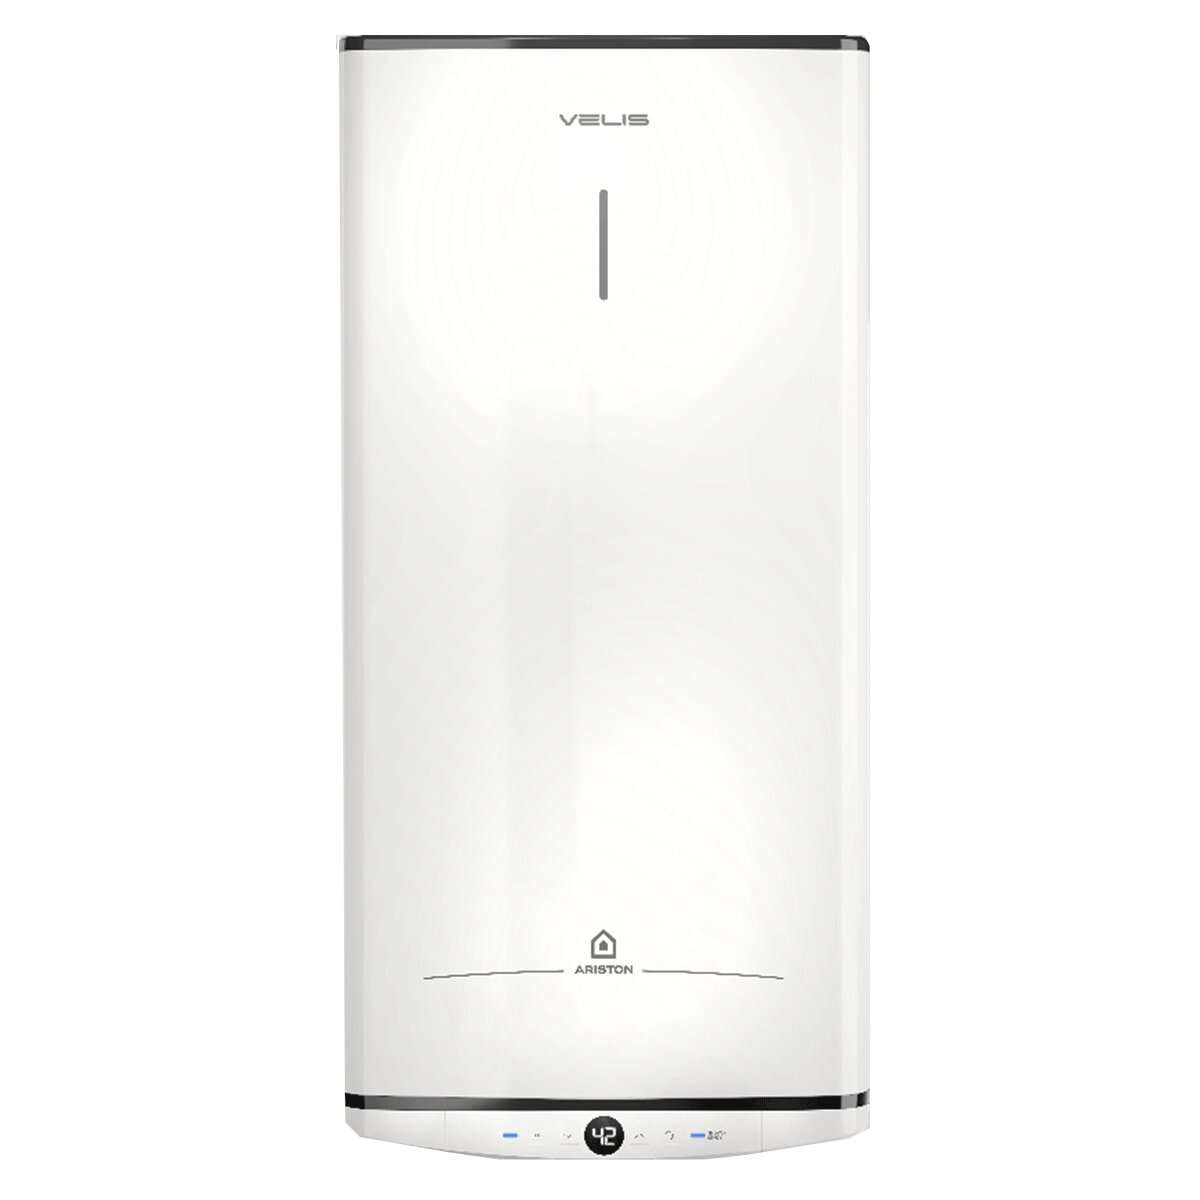 Ariston Velis Pro Vertical/Horizontal 100 Liter electric water heater